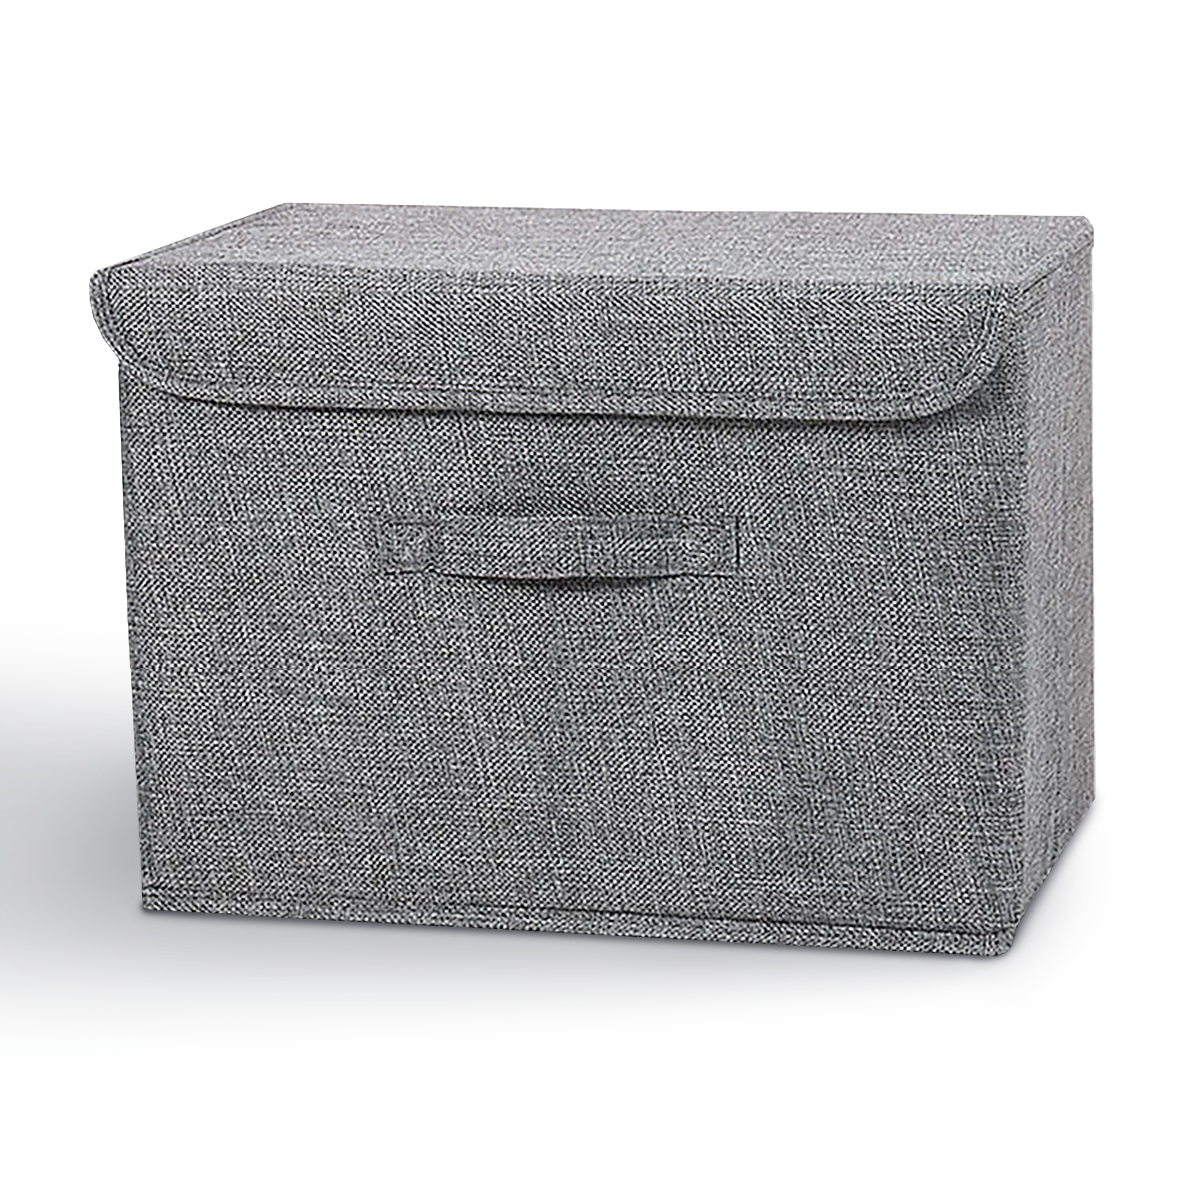 Ящик для хранения с крышкой MVM тканевый серый 310x350x500 TH-07 XL GRAY